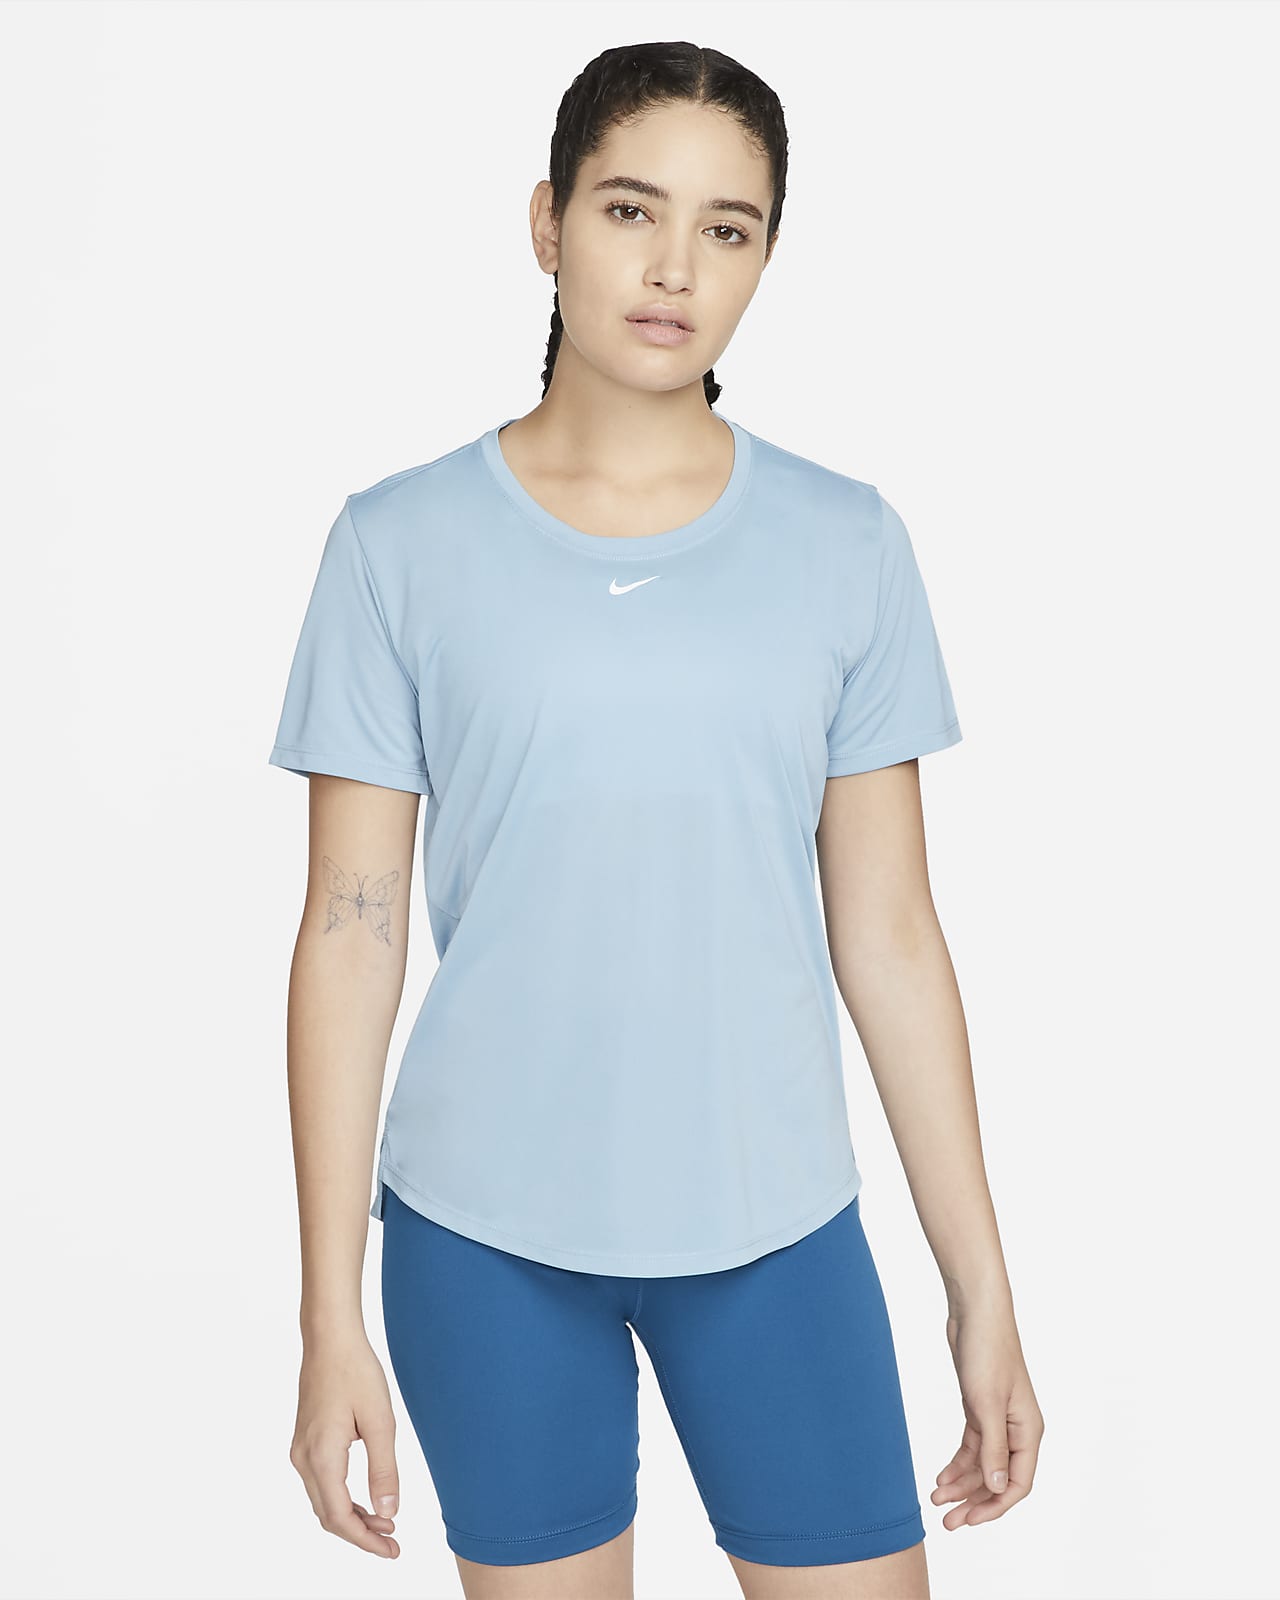 Nike Dri-FIT One 女款標準剪裁短袖上衣